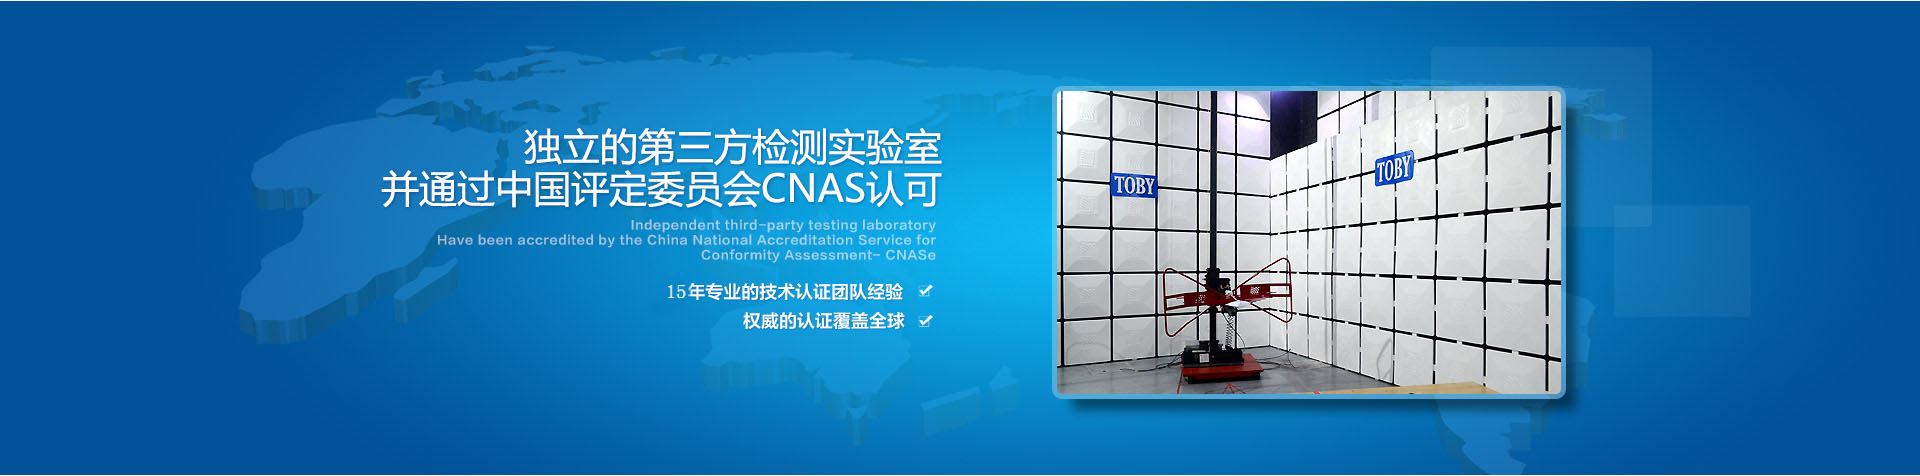 獨立的第三方檢測實驗室通過中國評定委員會GNAS認可